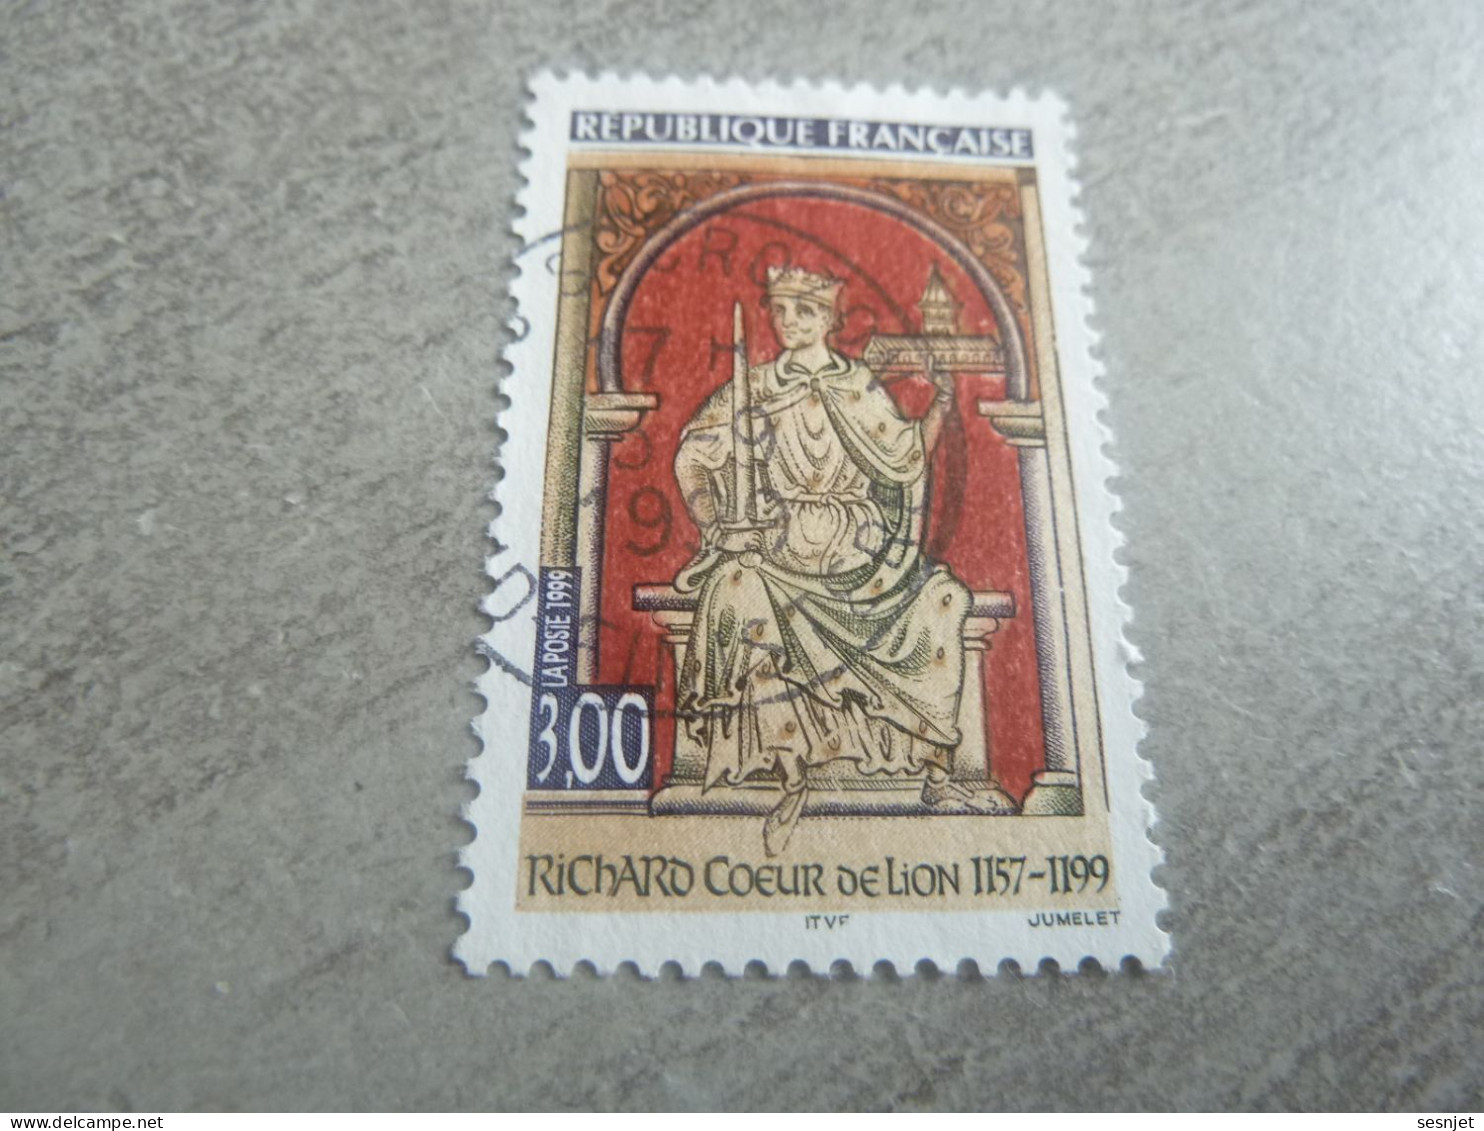 Richard Coeur De Lion (1157-1199) Roi - 3f. - Yt 3238 - Multicolore - Oblitéré - Année 1999 - - Usados